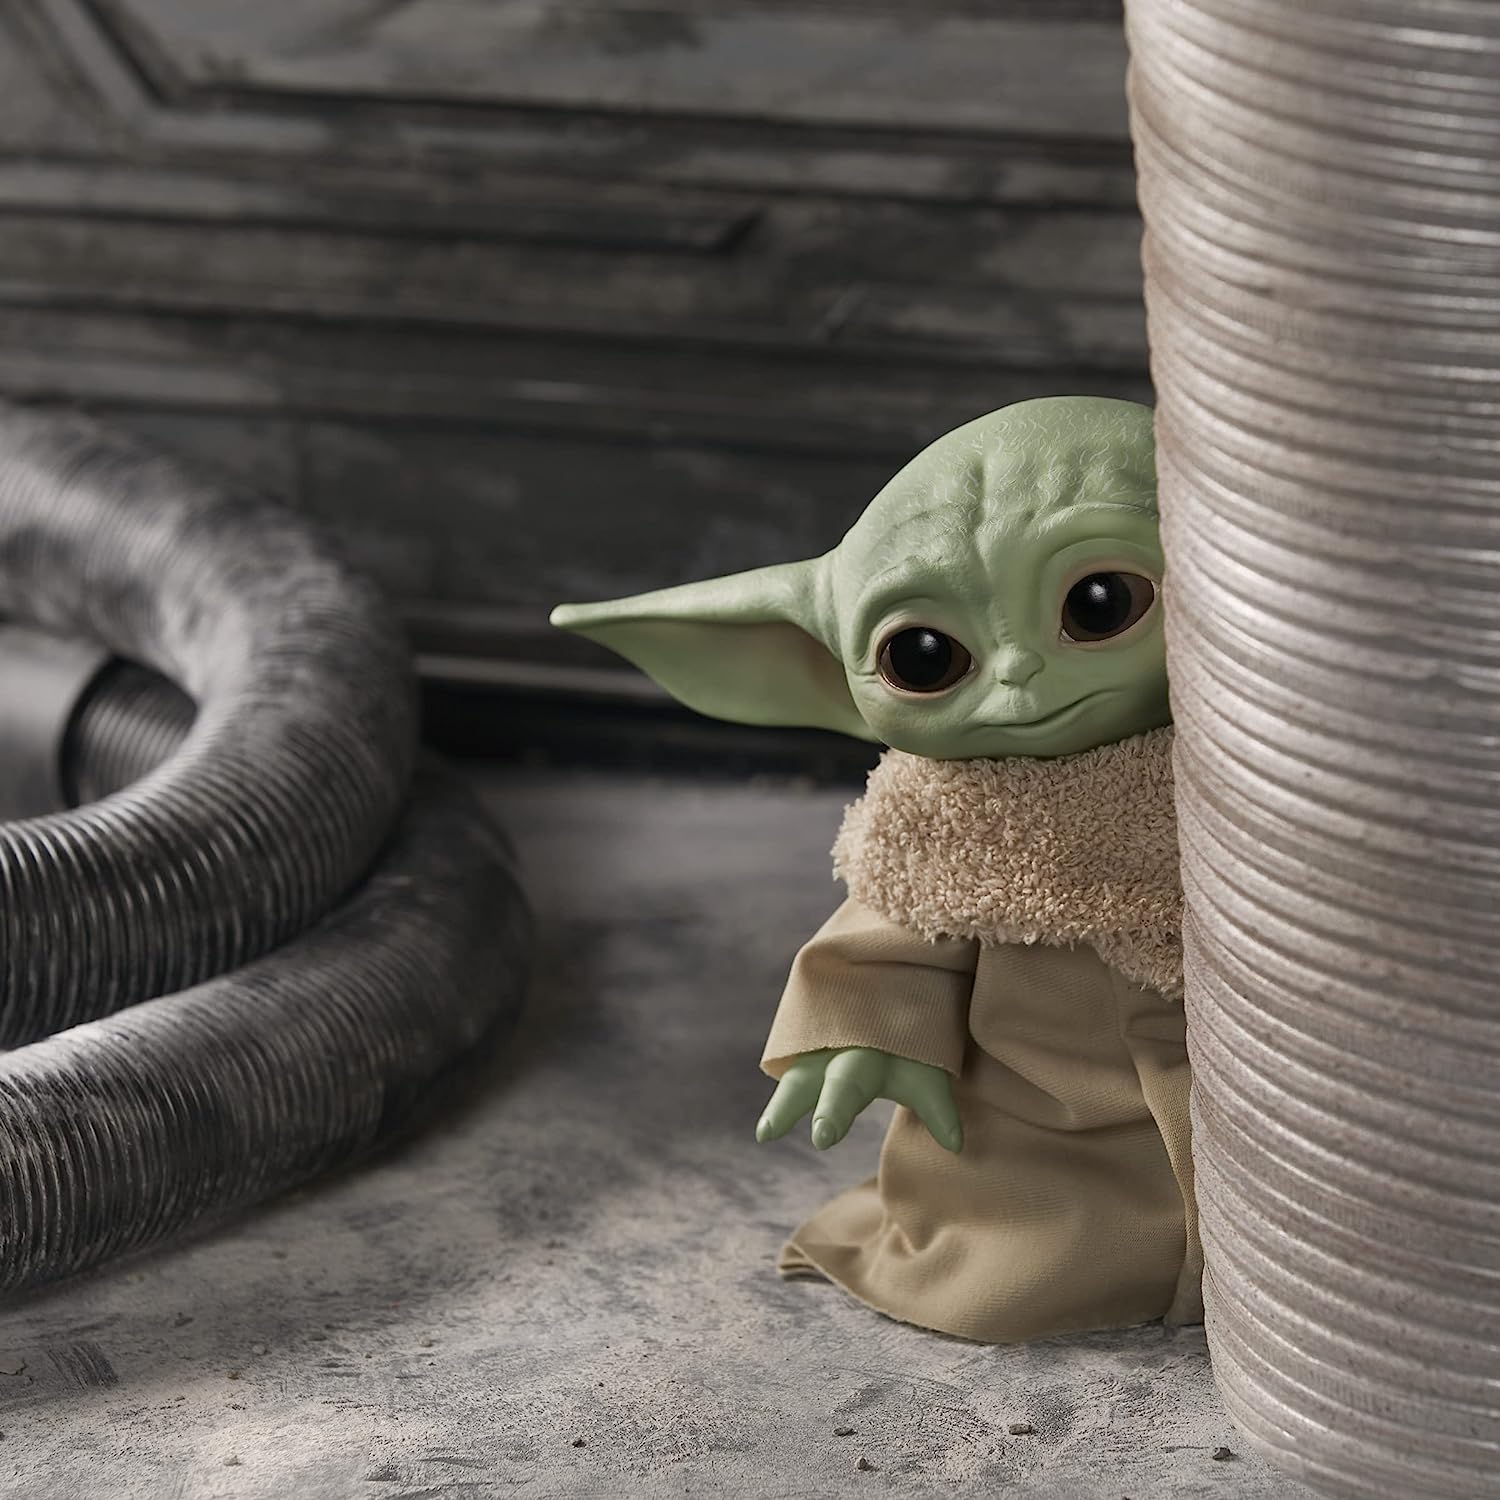 Tazza Star Wars a forma di Baby Yoda